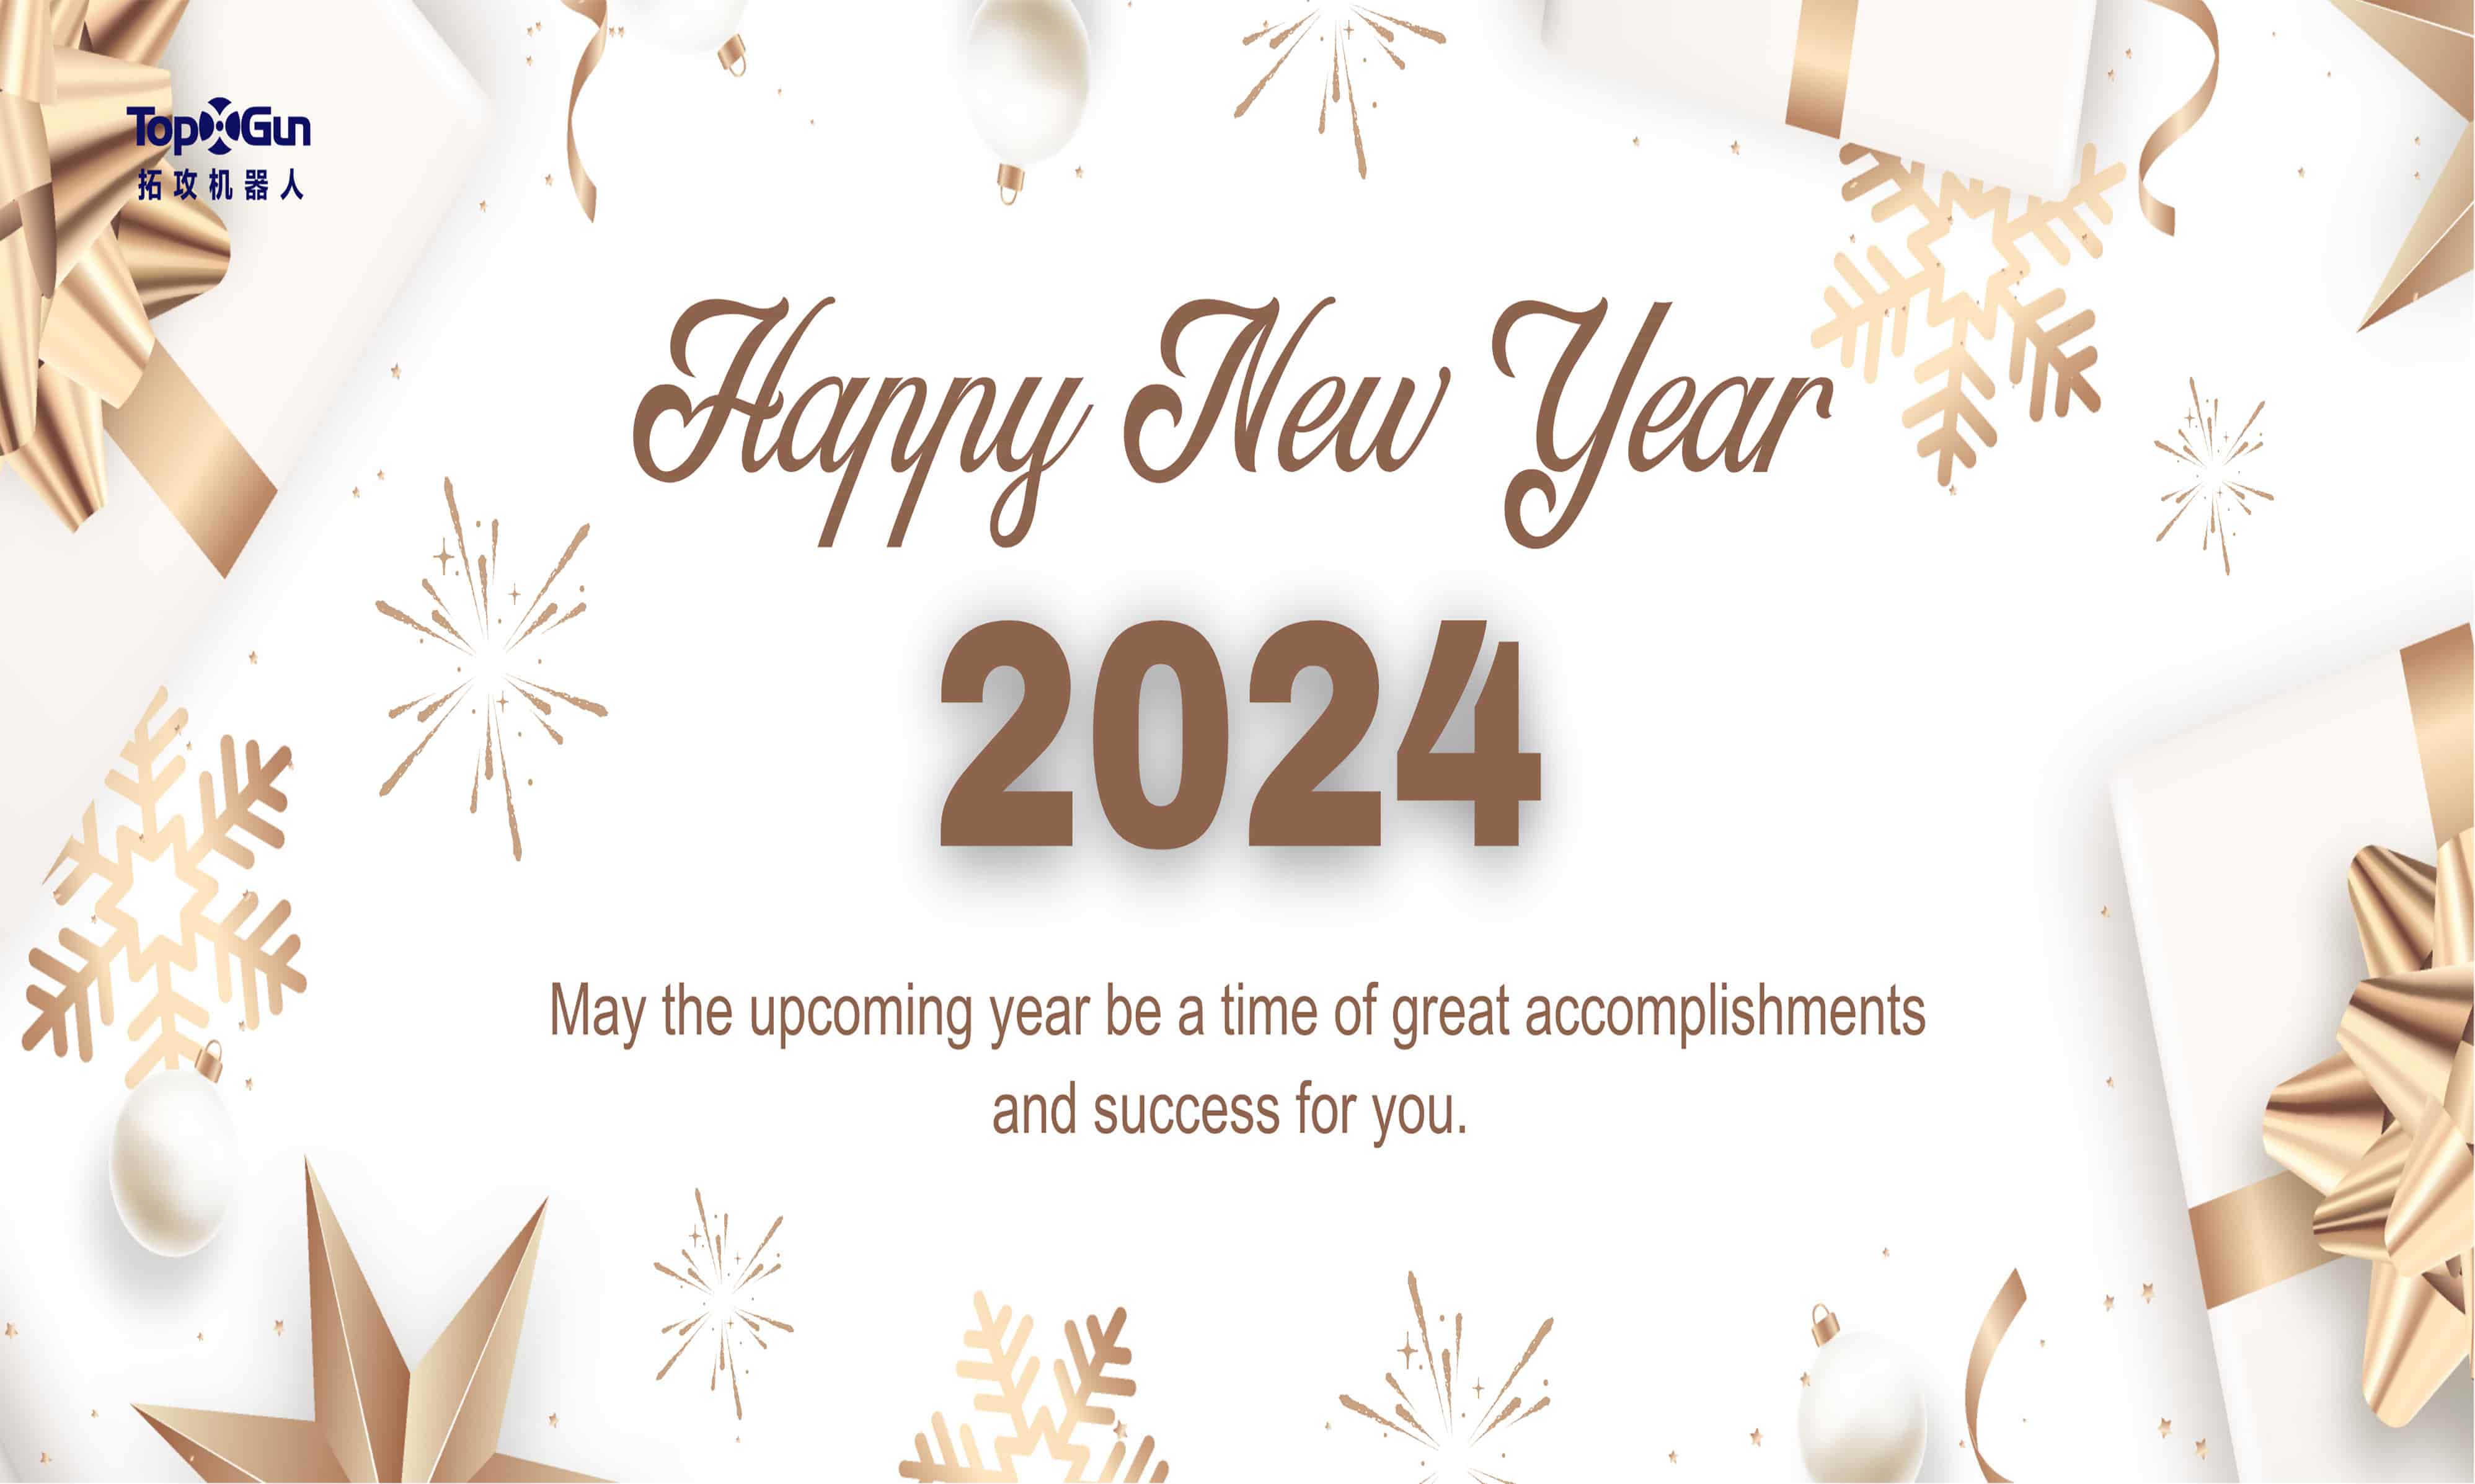 Topxgun dá as boas-vindas ao ano novo de 2024!